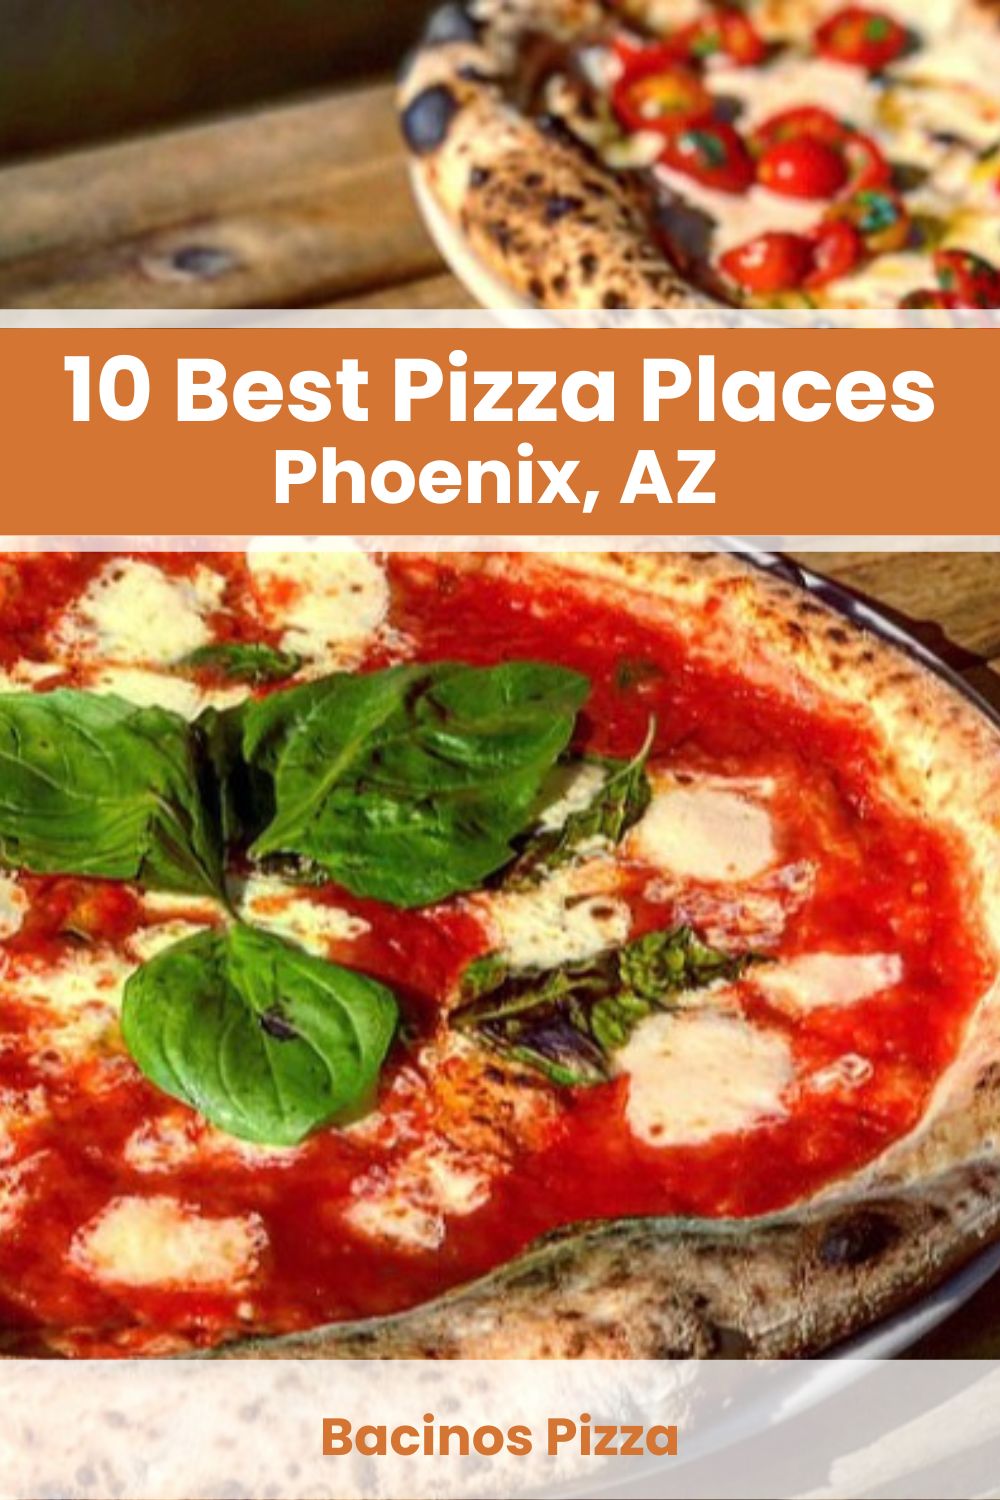 Best Pizza Places in Phoenix